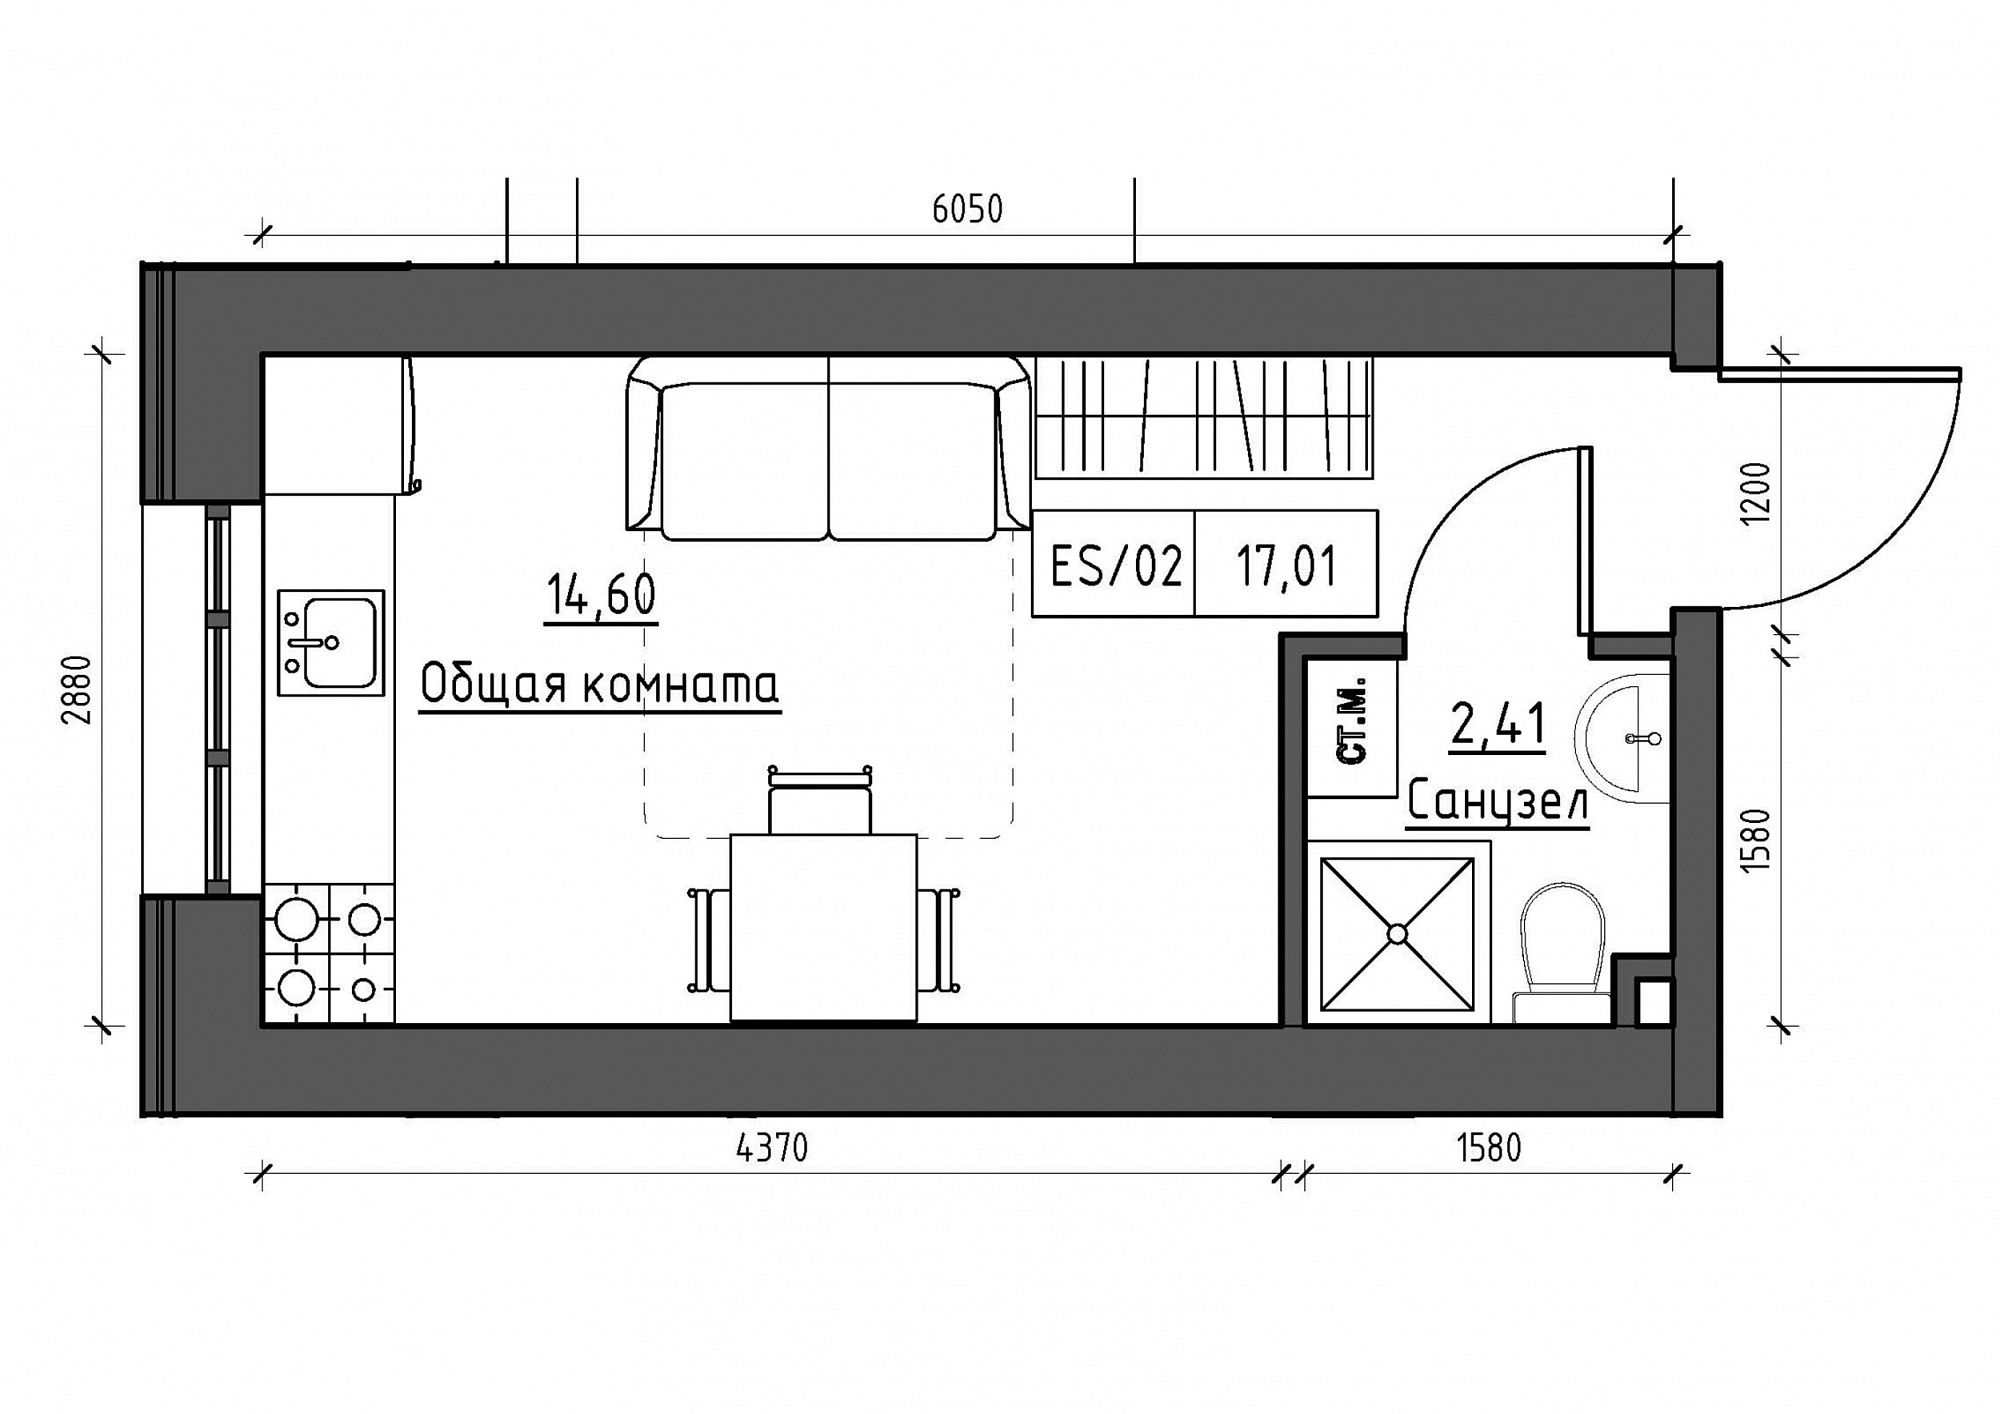 Планування Smart-квартира площею 17.02м2, KS-011-04/0002.